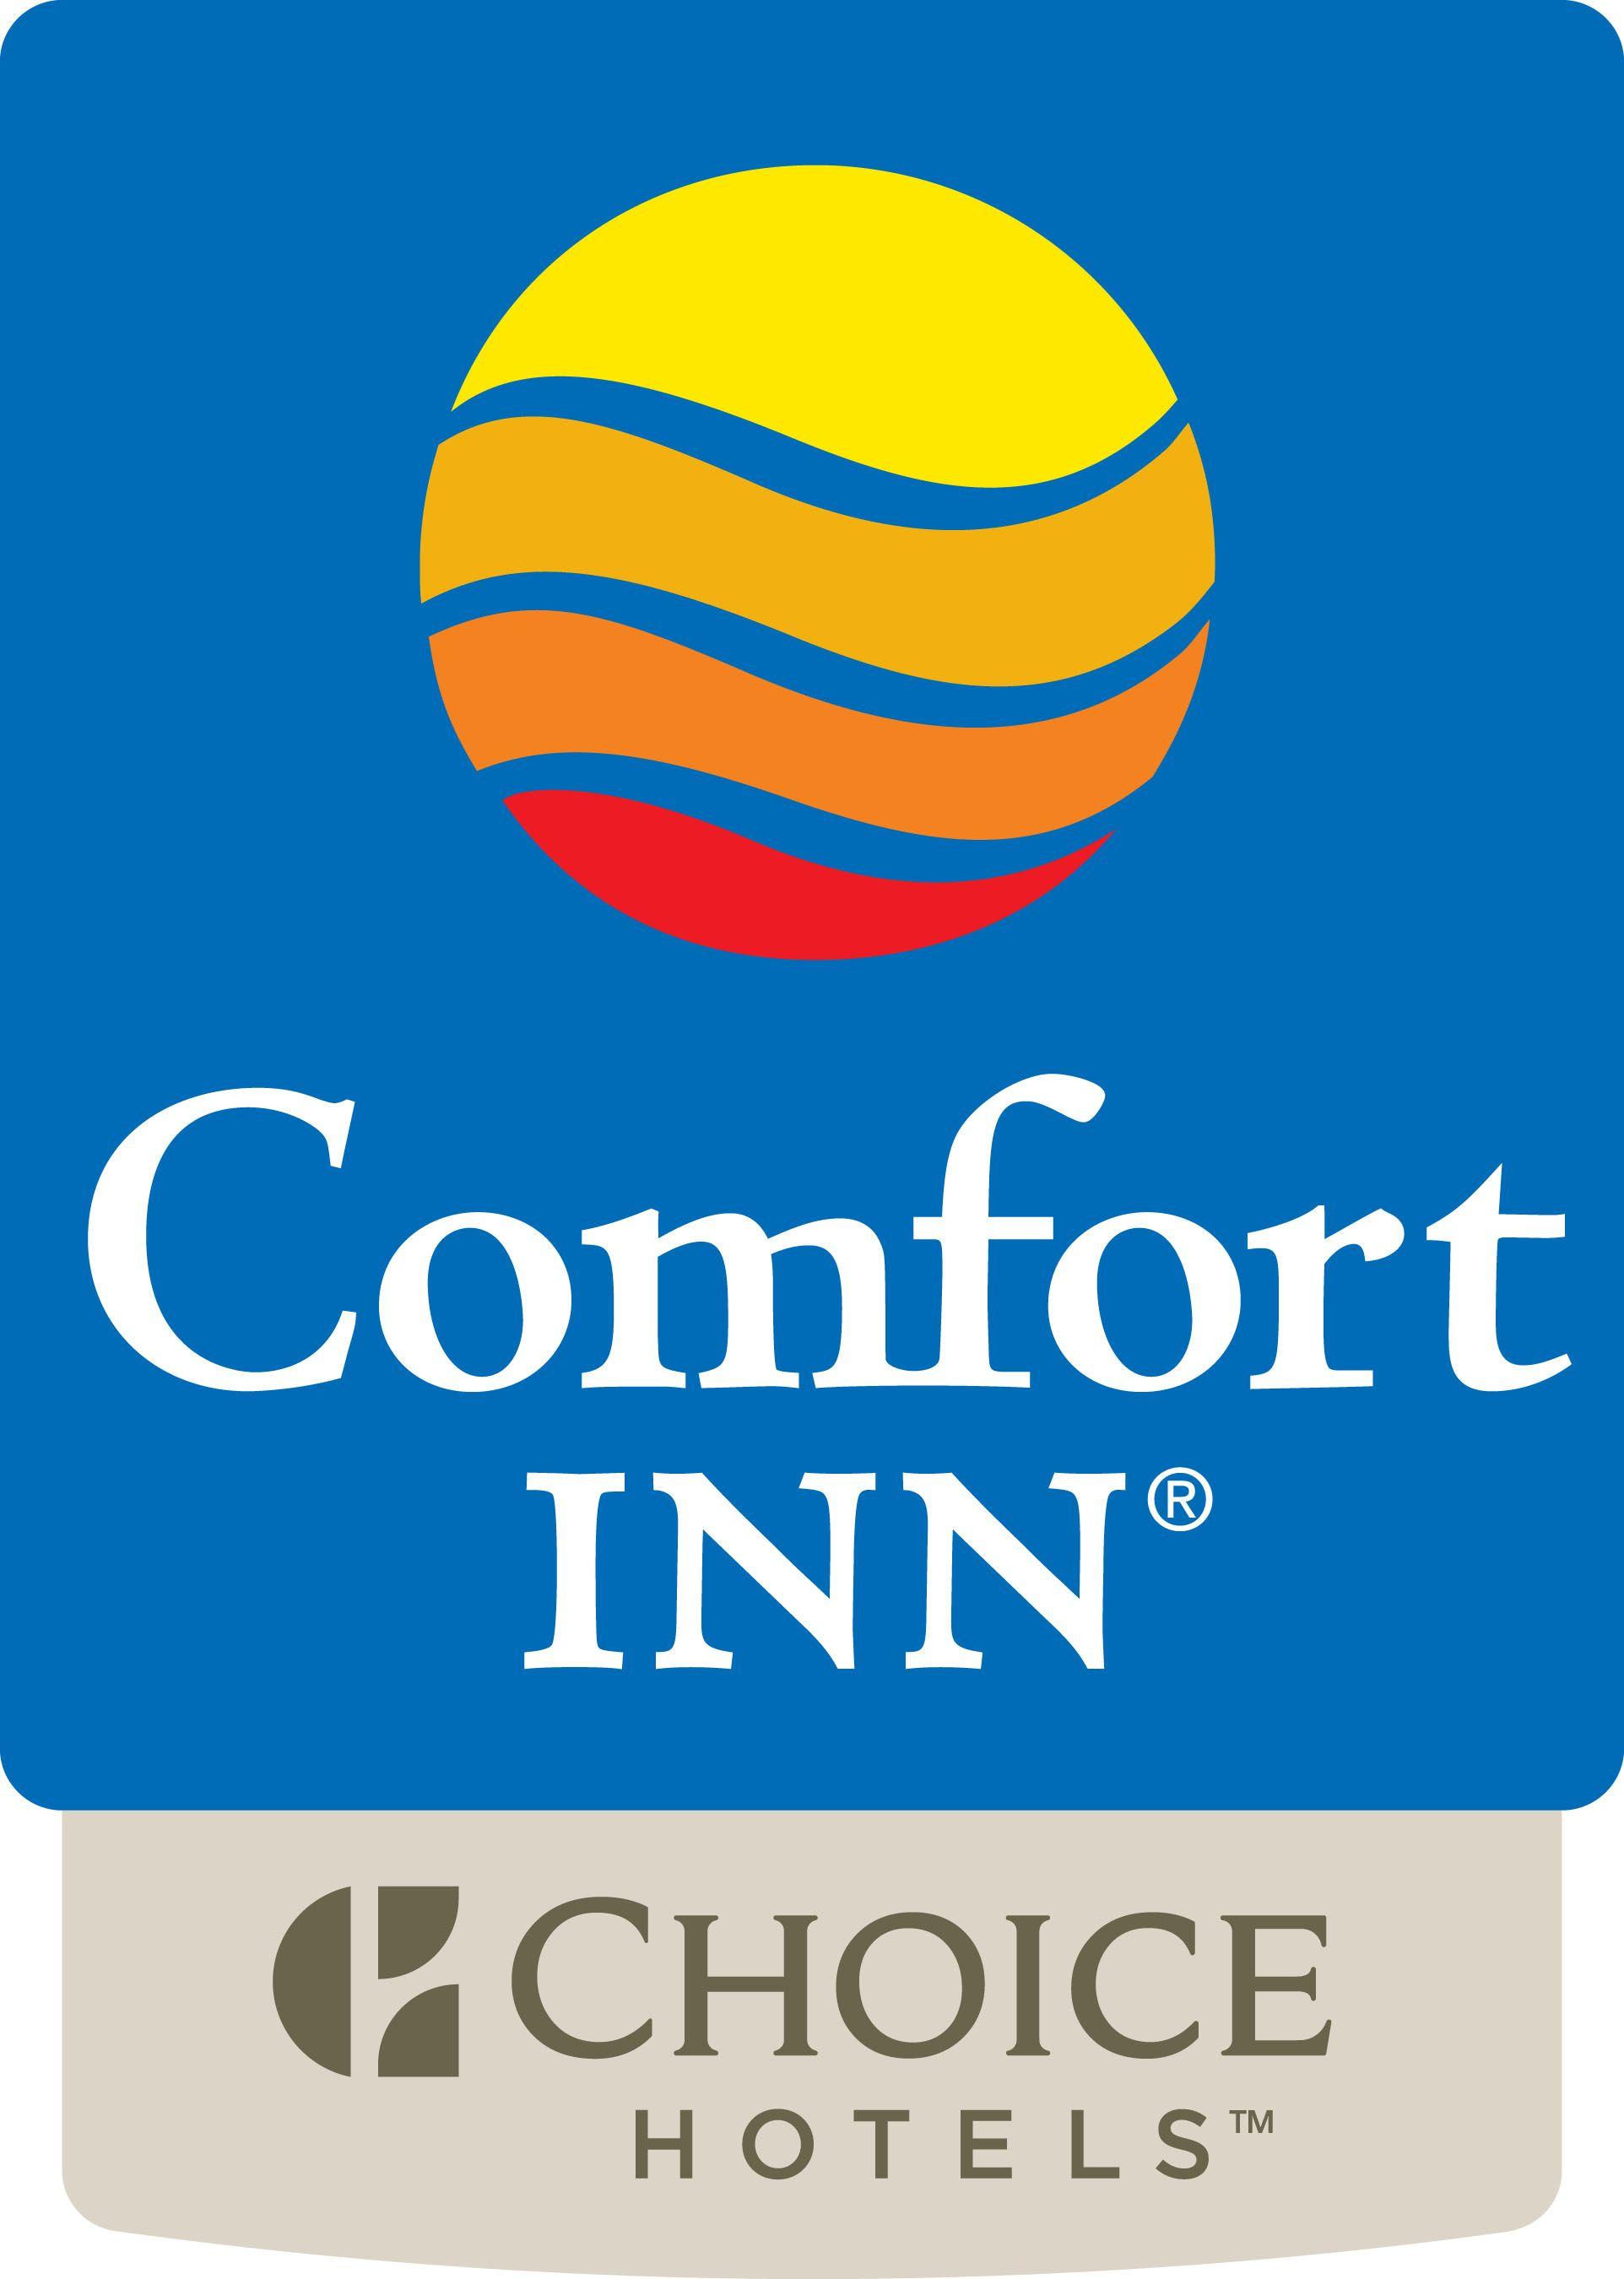 Comfort Inn Logo - CHOICE HOTELS INTERNATIONAL COMFORT INN LOGO - Workhouse Brewfest